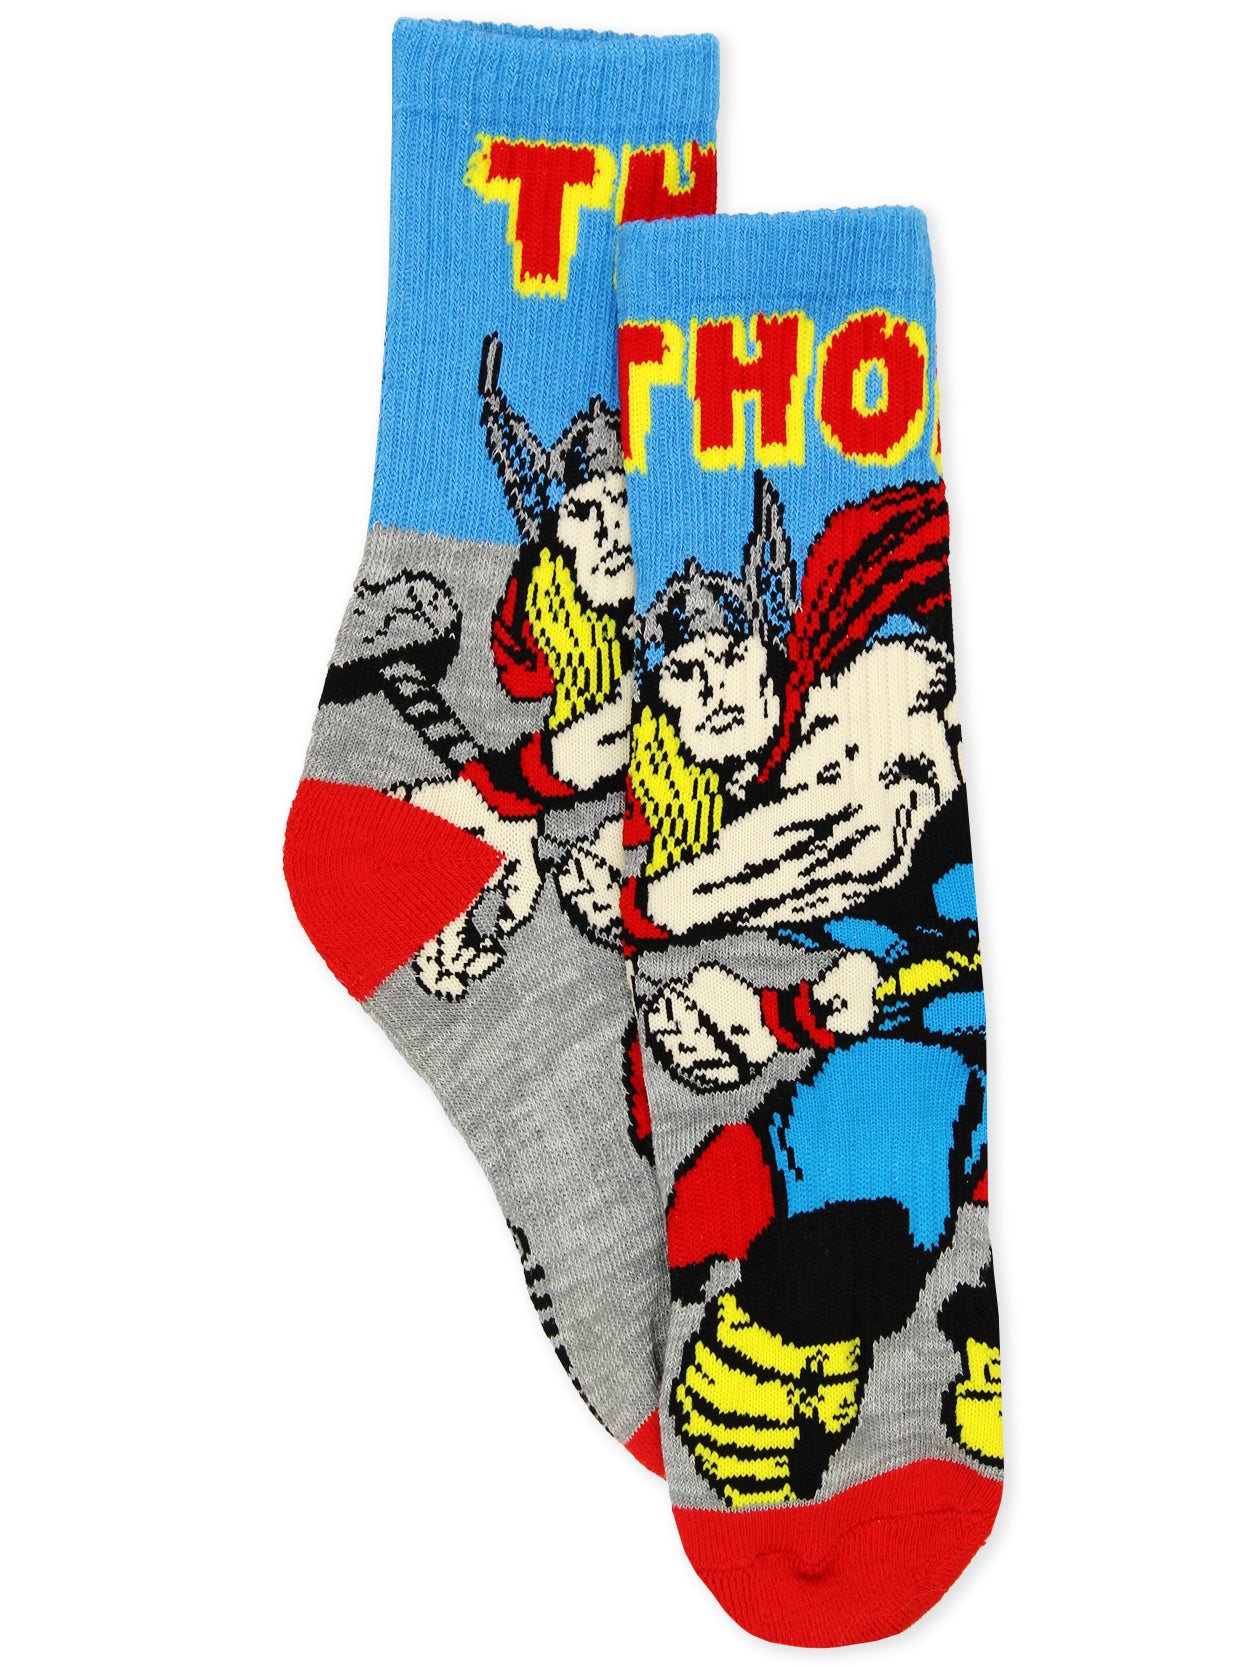 Marvel Avengers Black Panther Hulk Thor Crew Socks 3-Pack